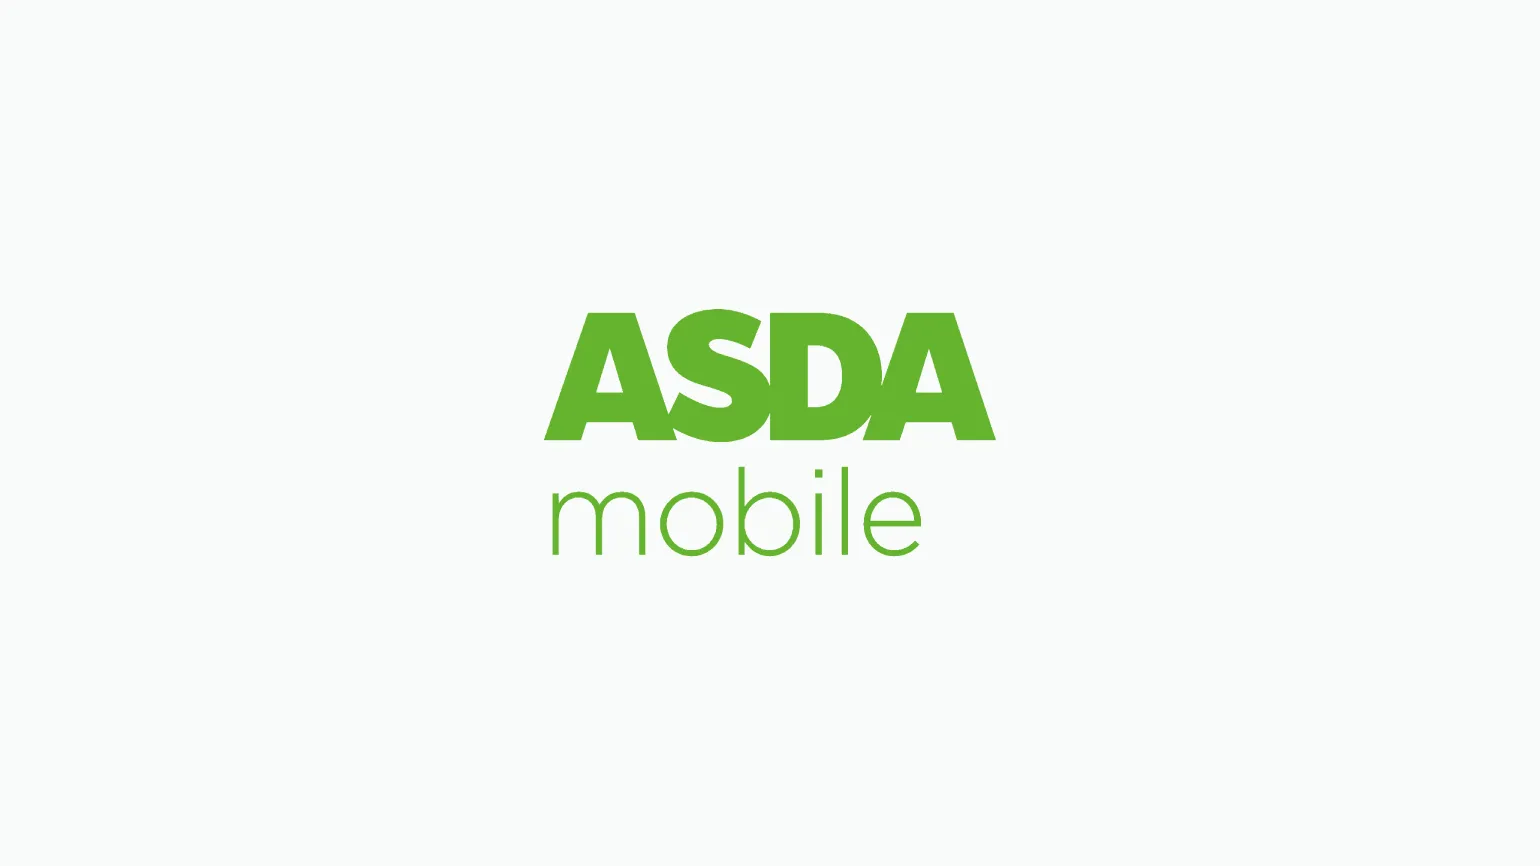 Asda Mobile